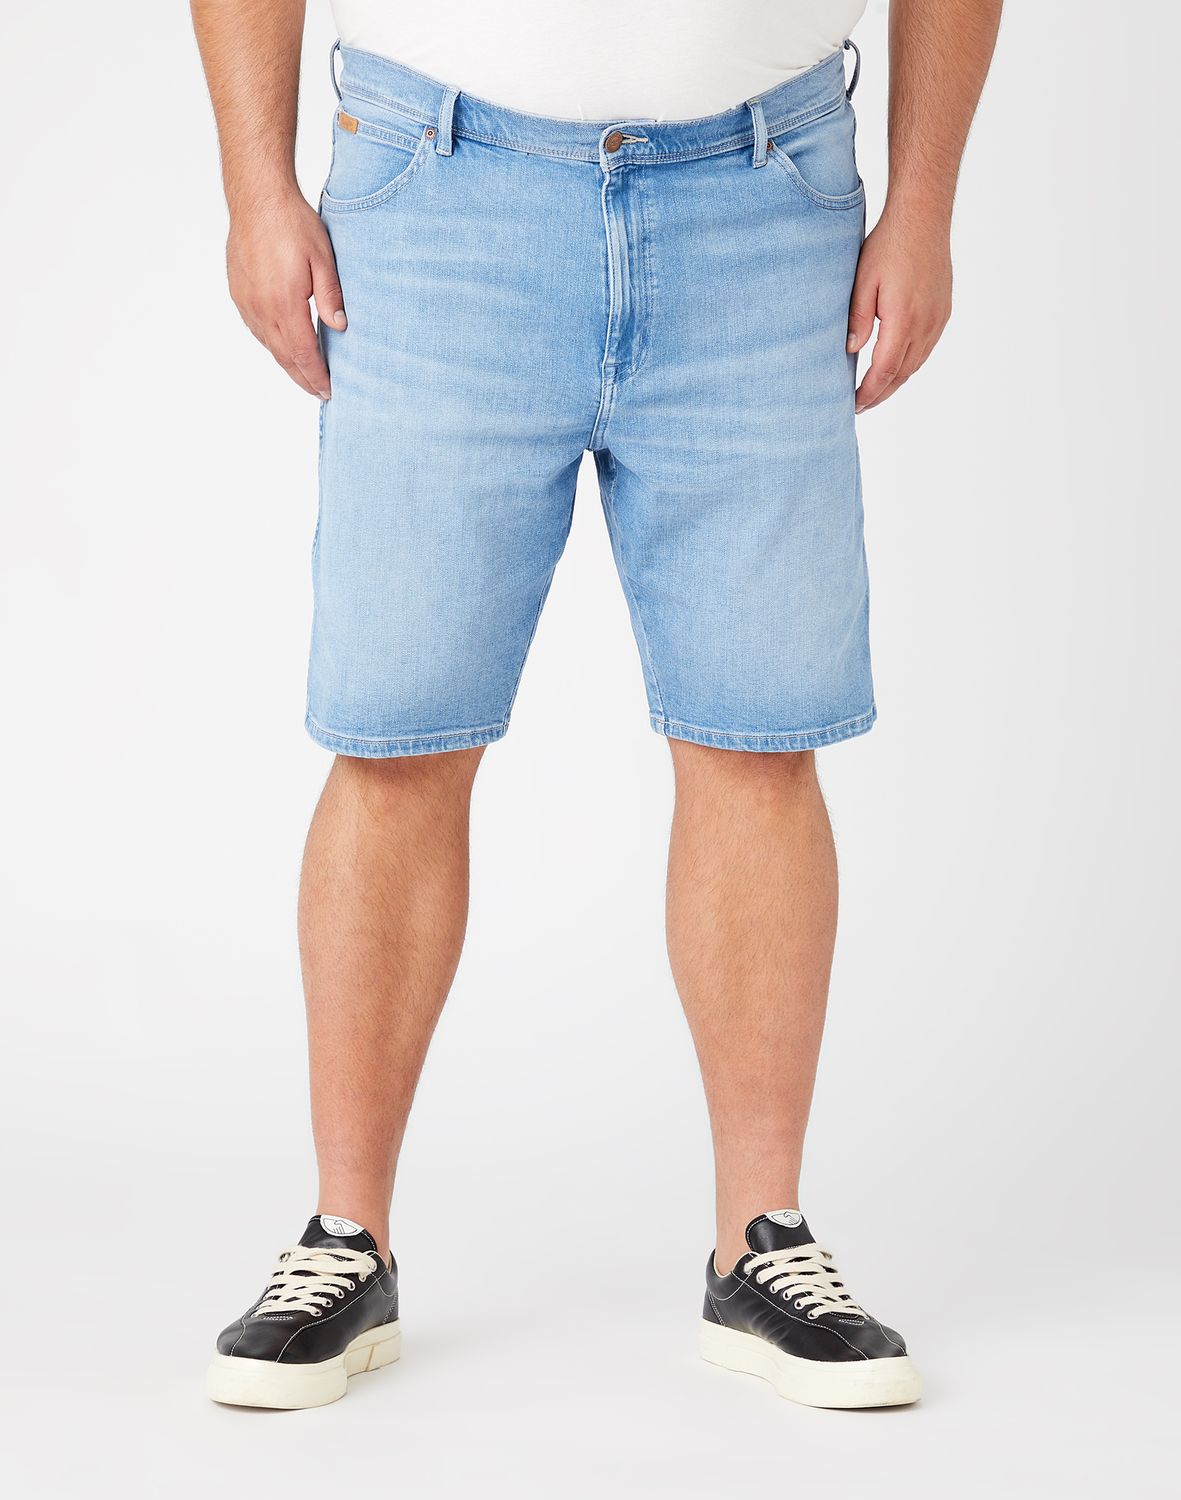 фото Шорты мужские wrangler texas shorts голубые 30